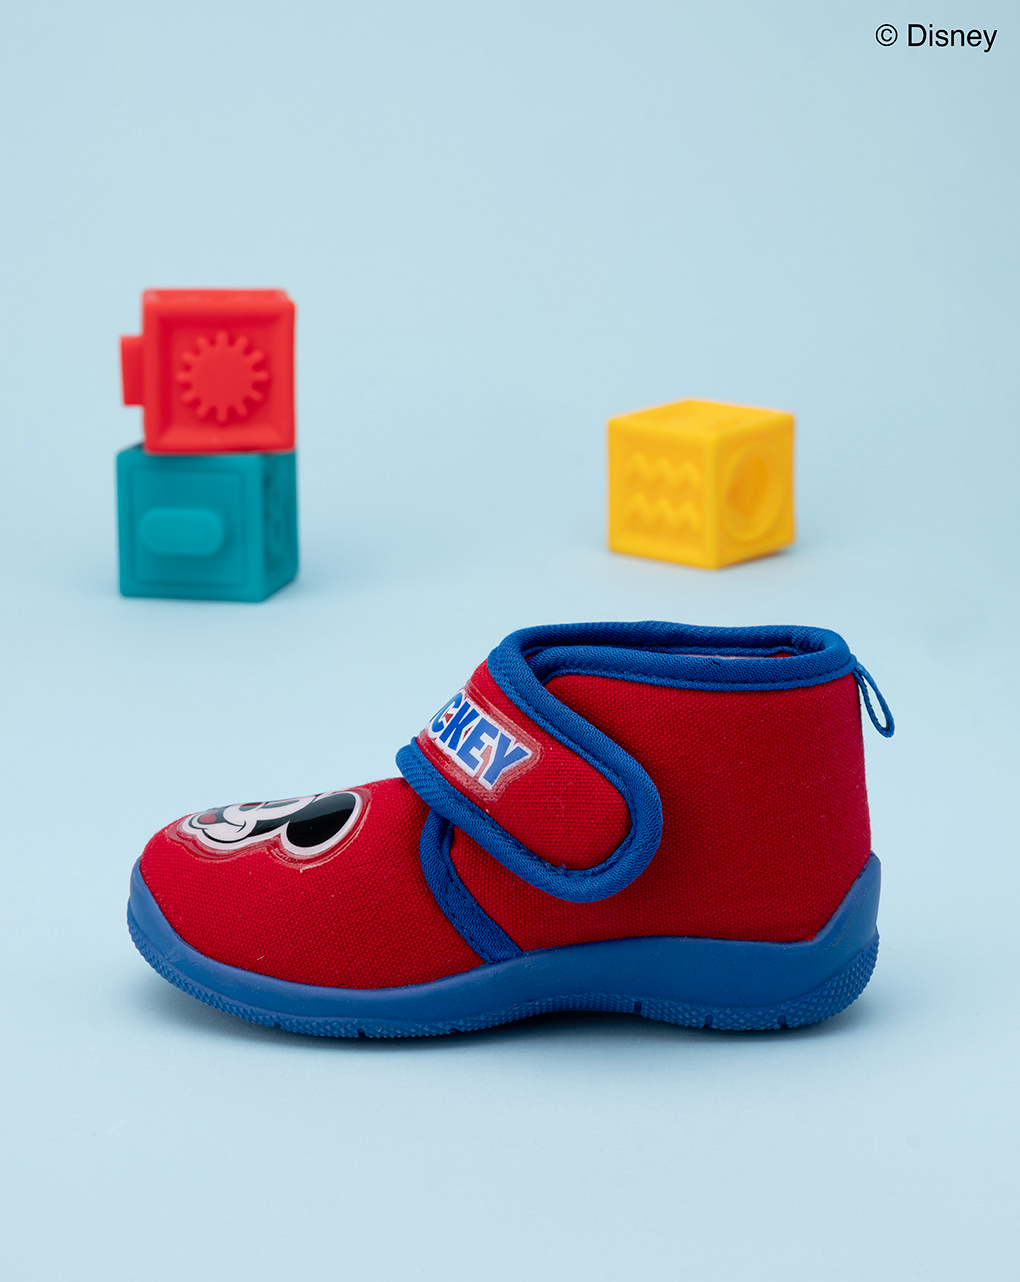 Sapato mickey mouse vermelho para o jardim de infância - Silverlit